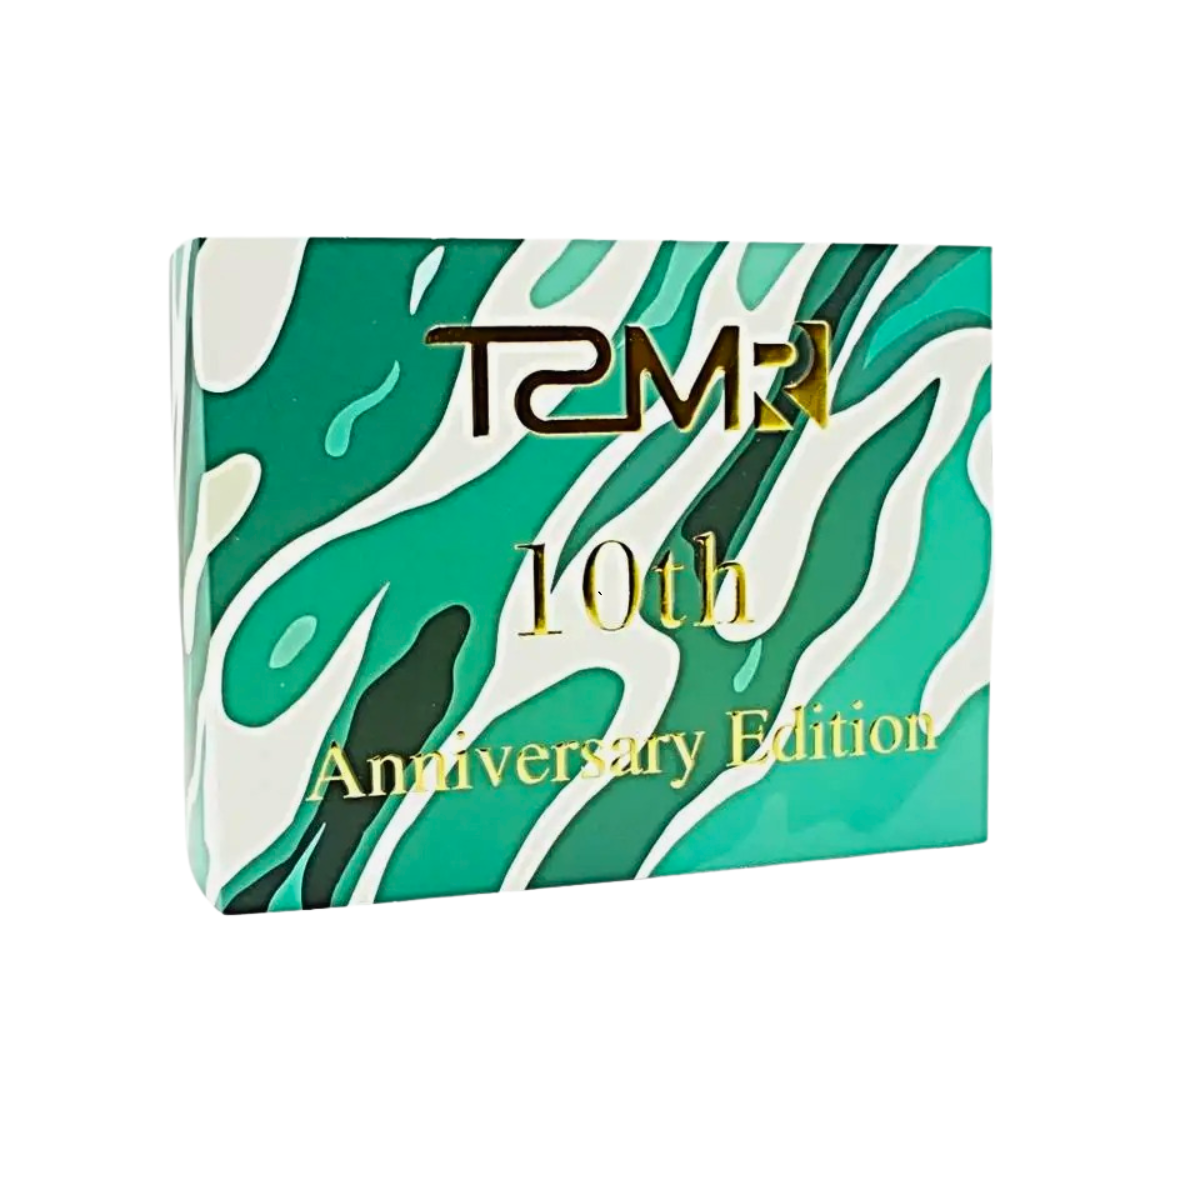 TSMR X 10th Anniversary IEM